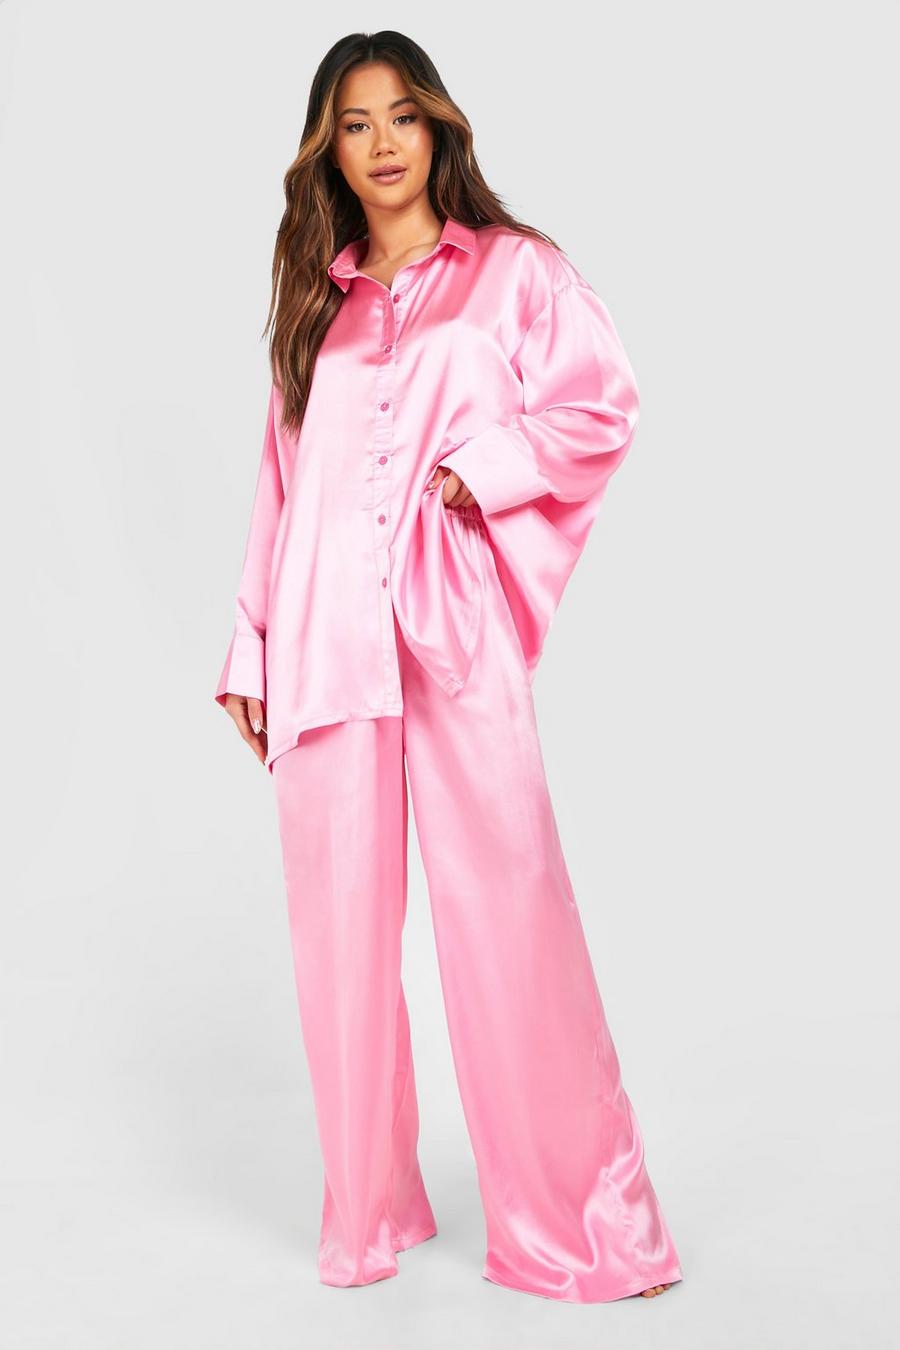 Sexy Pajama Women's Sleepwear 2023 New Lace Nightdress with Bra